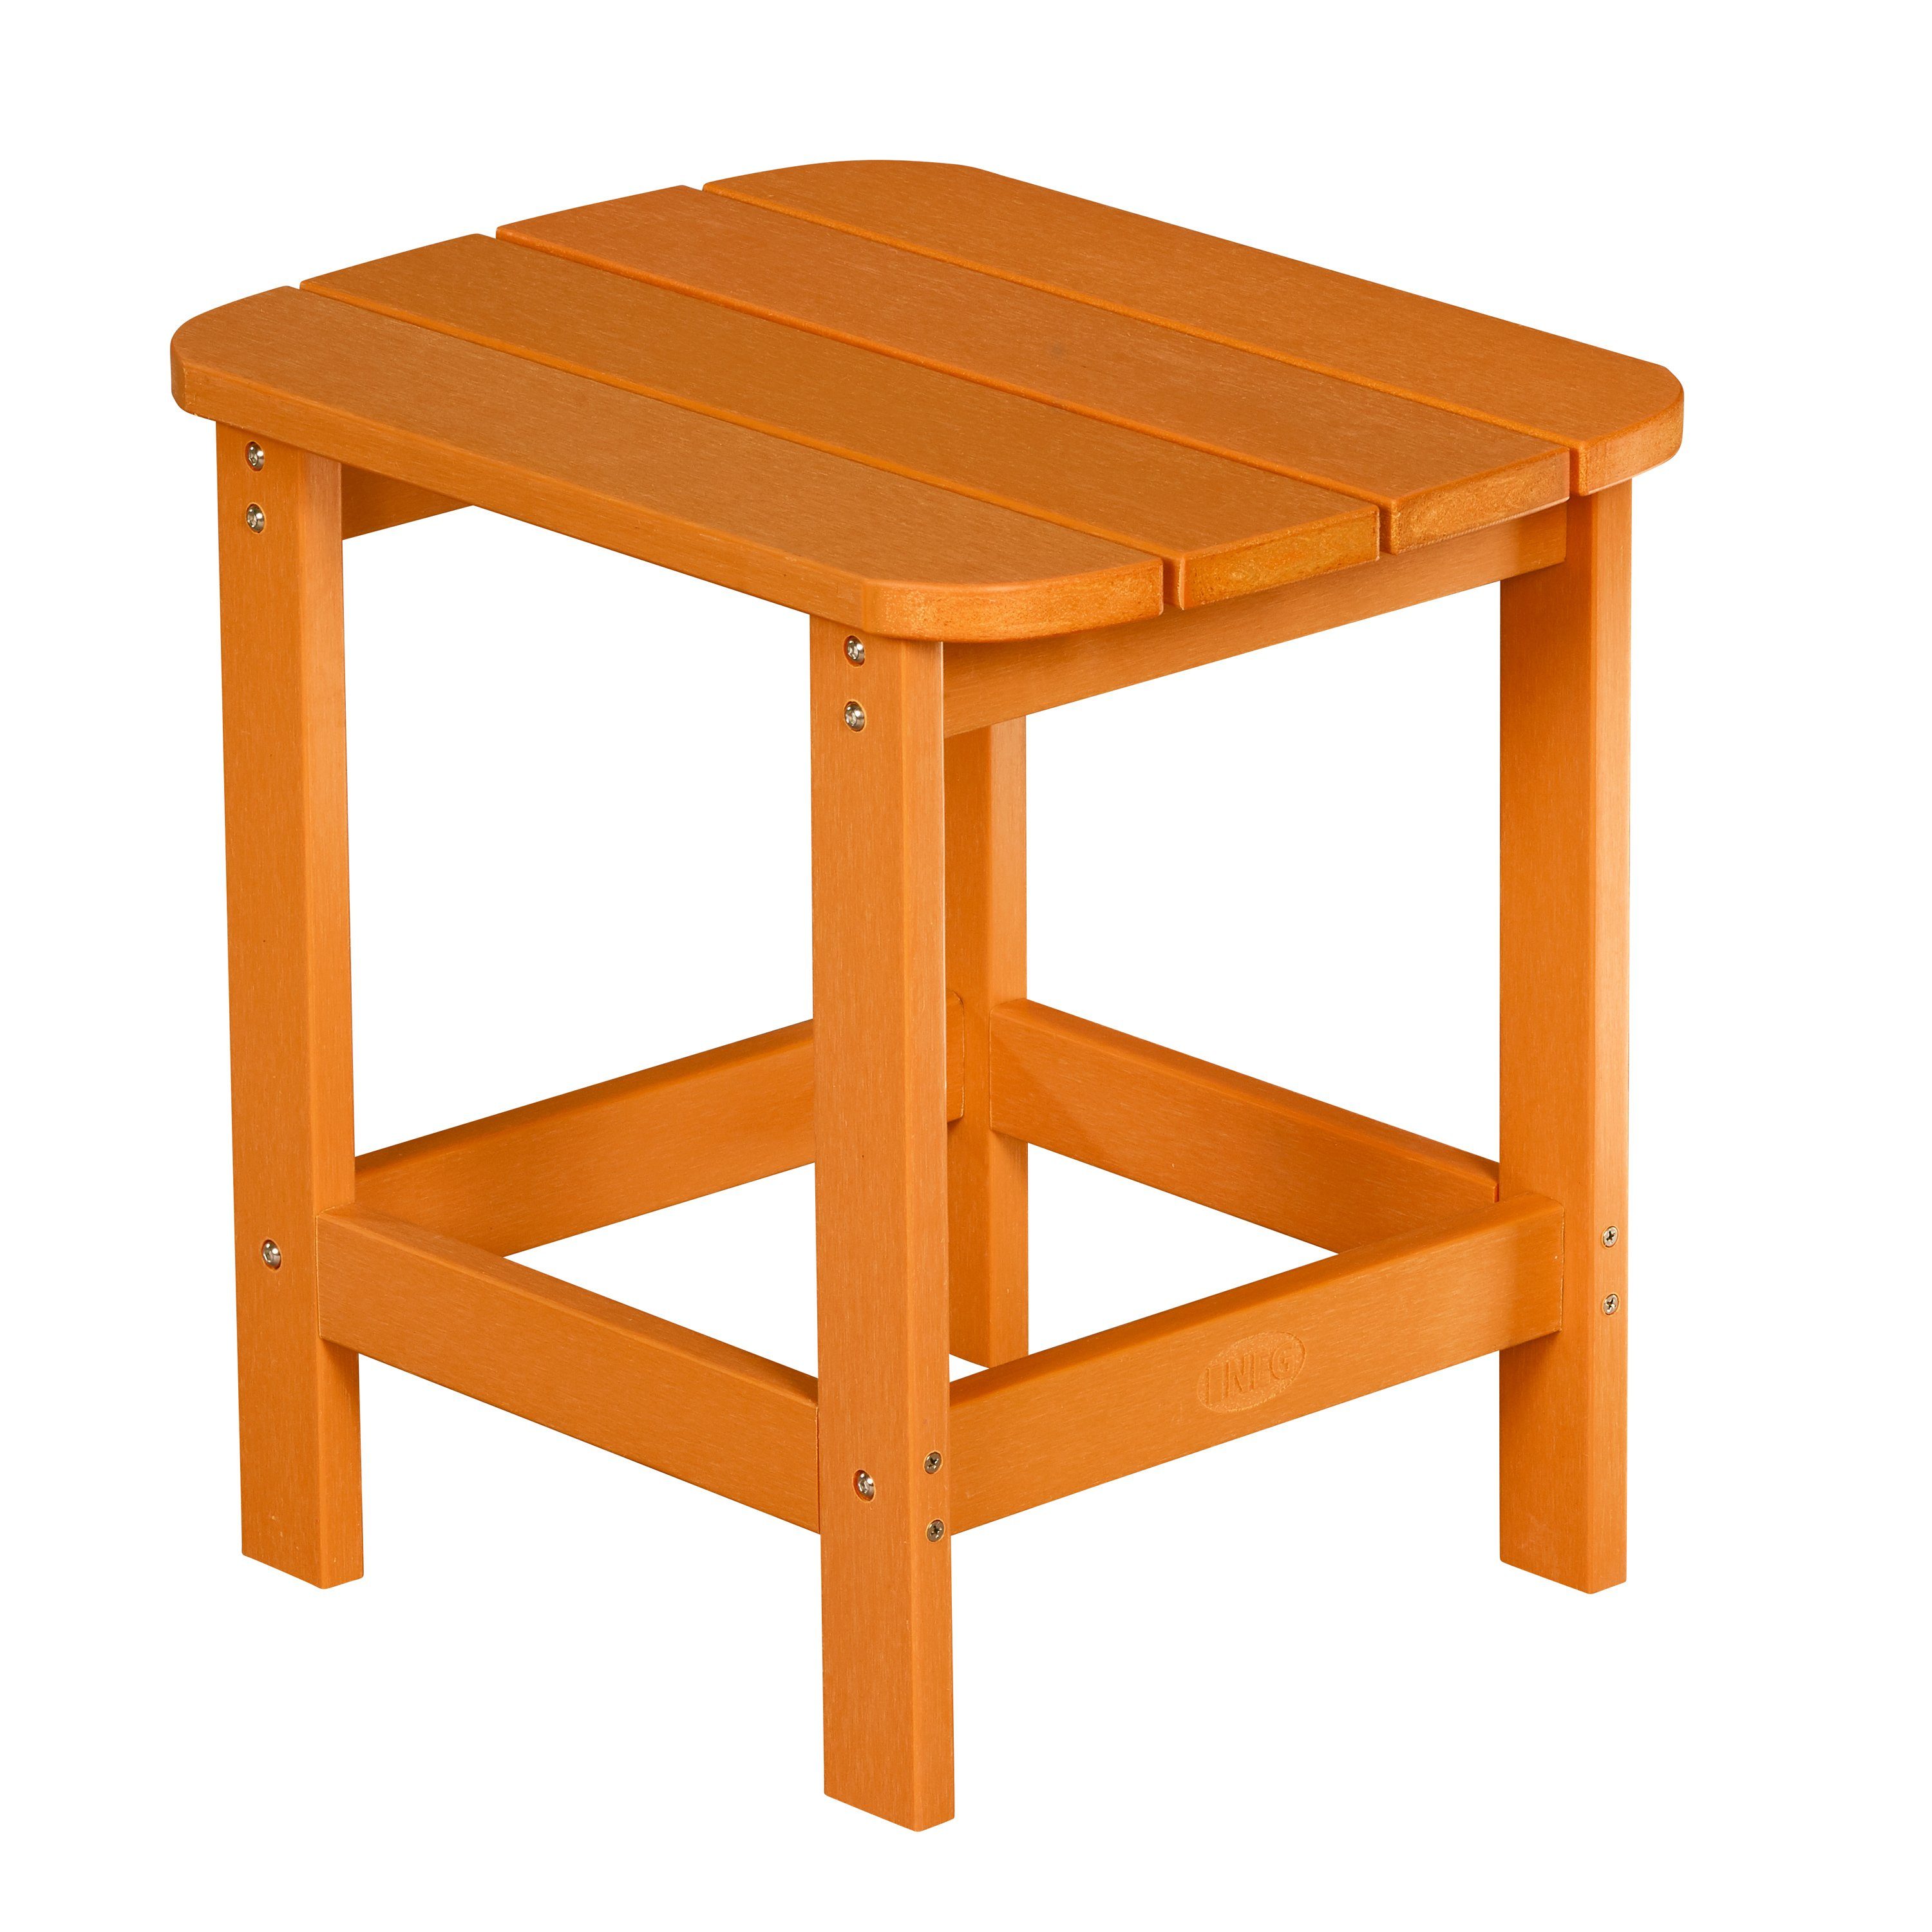 Gartenstuhl Adirondack NEG Tisch/Beistelltisch MARCY NEG orange